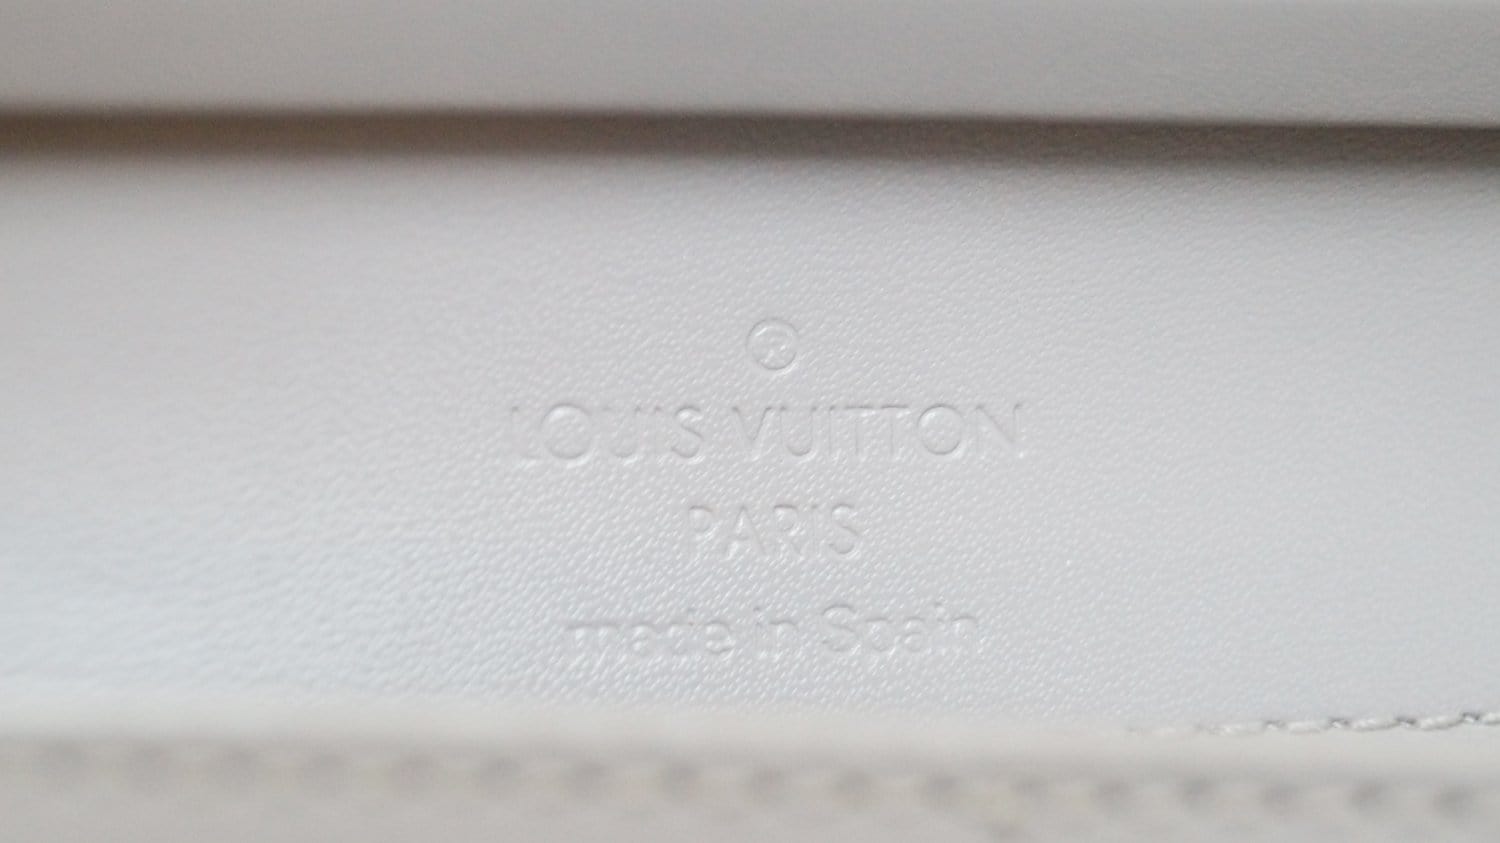 Louis Vuitton Black Epi Leather Honfleur Clutch